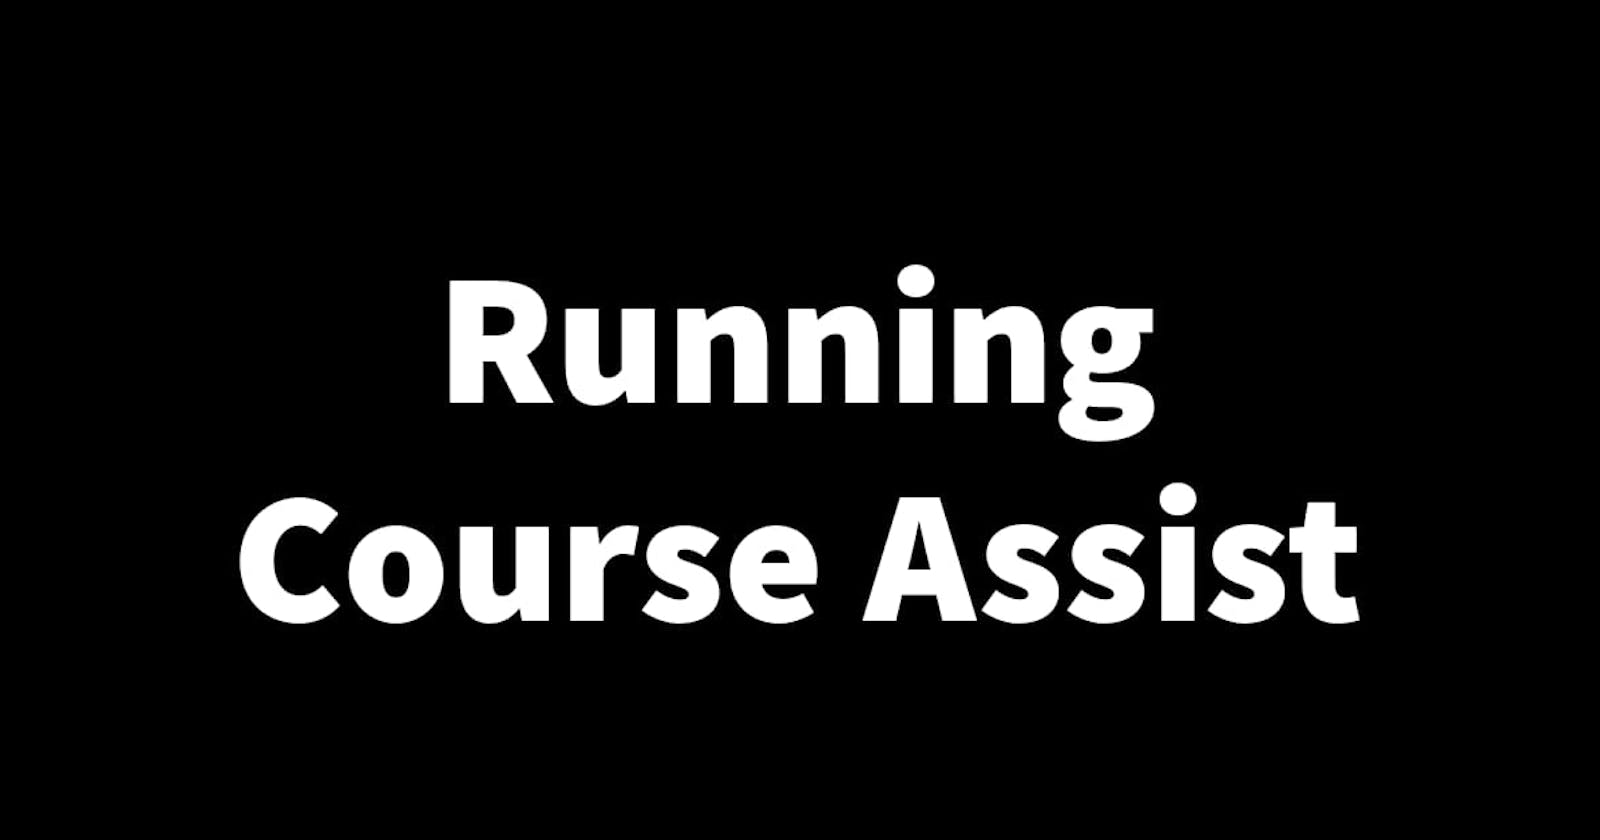 Running Course Assist: Prologue